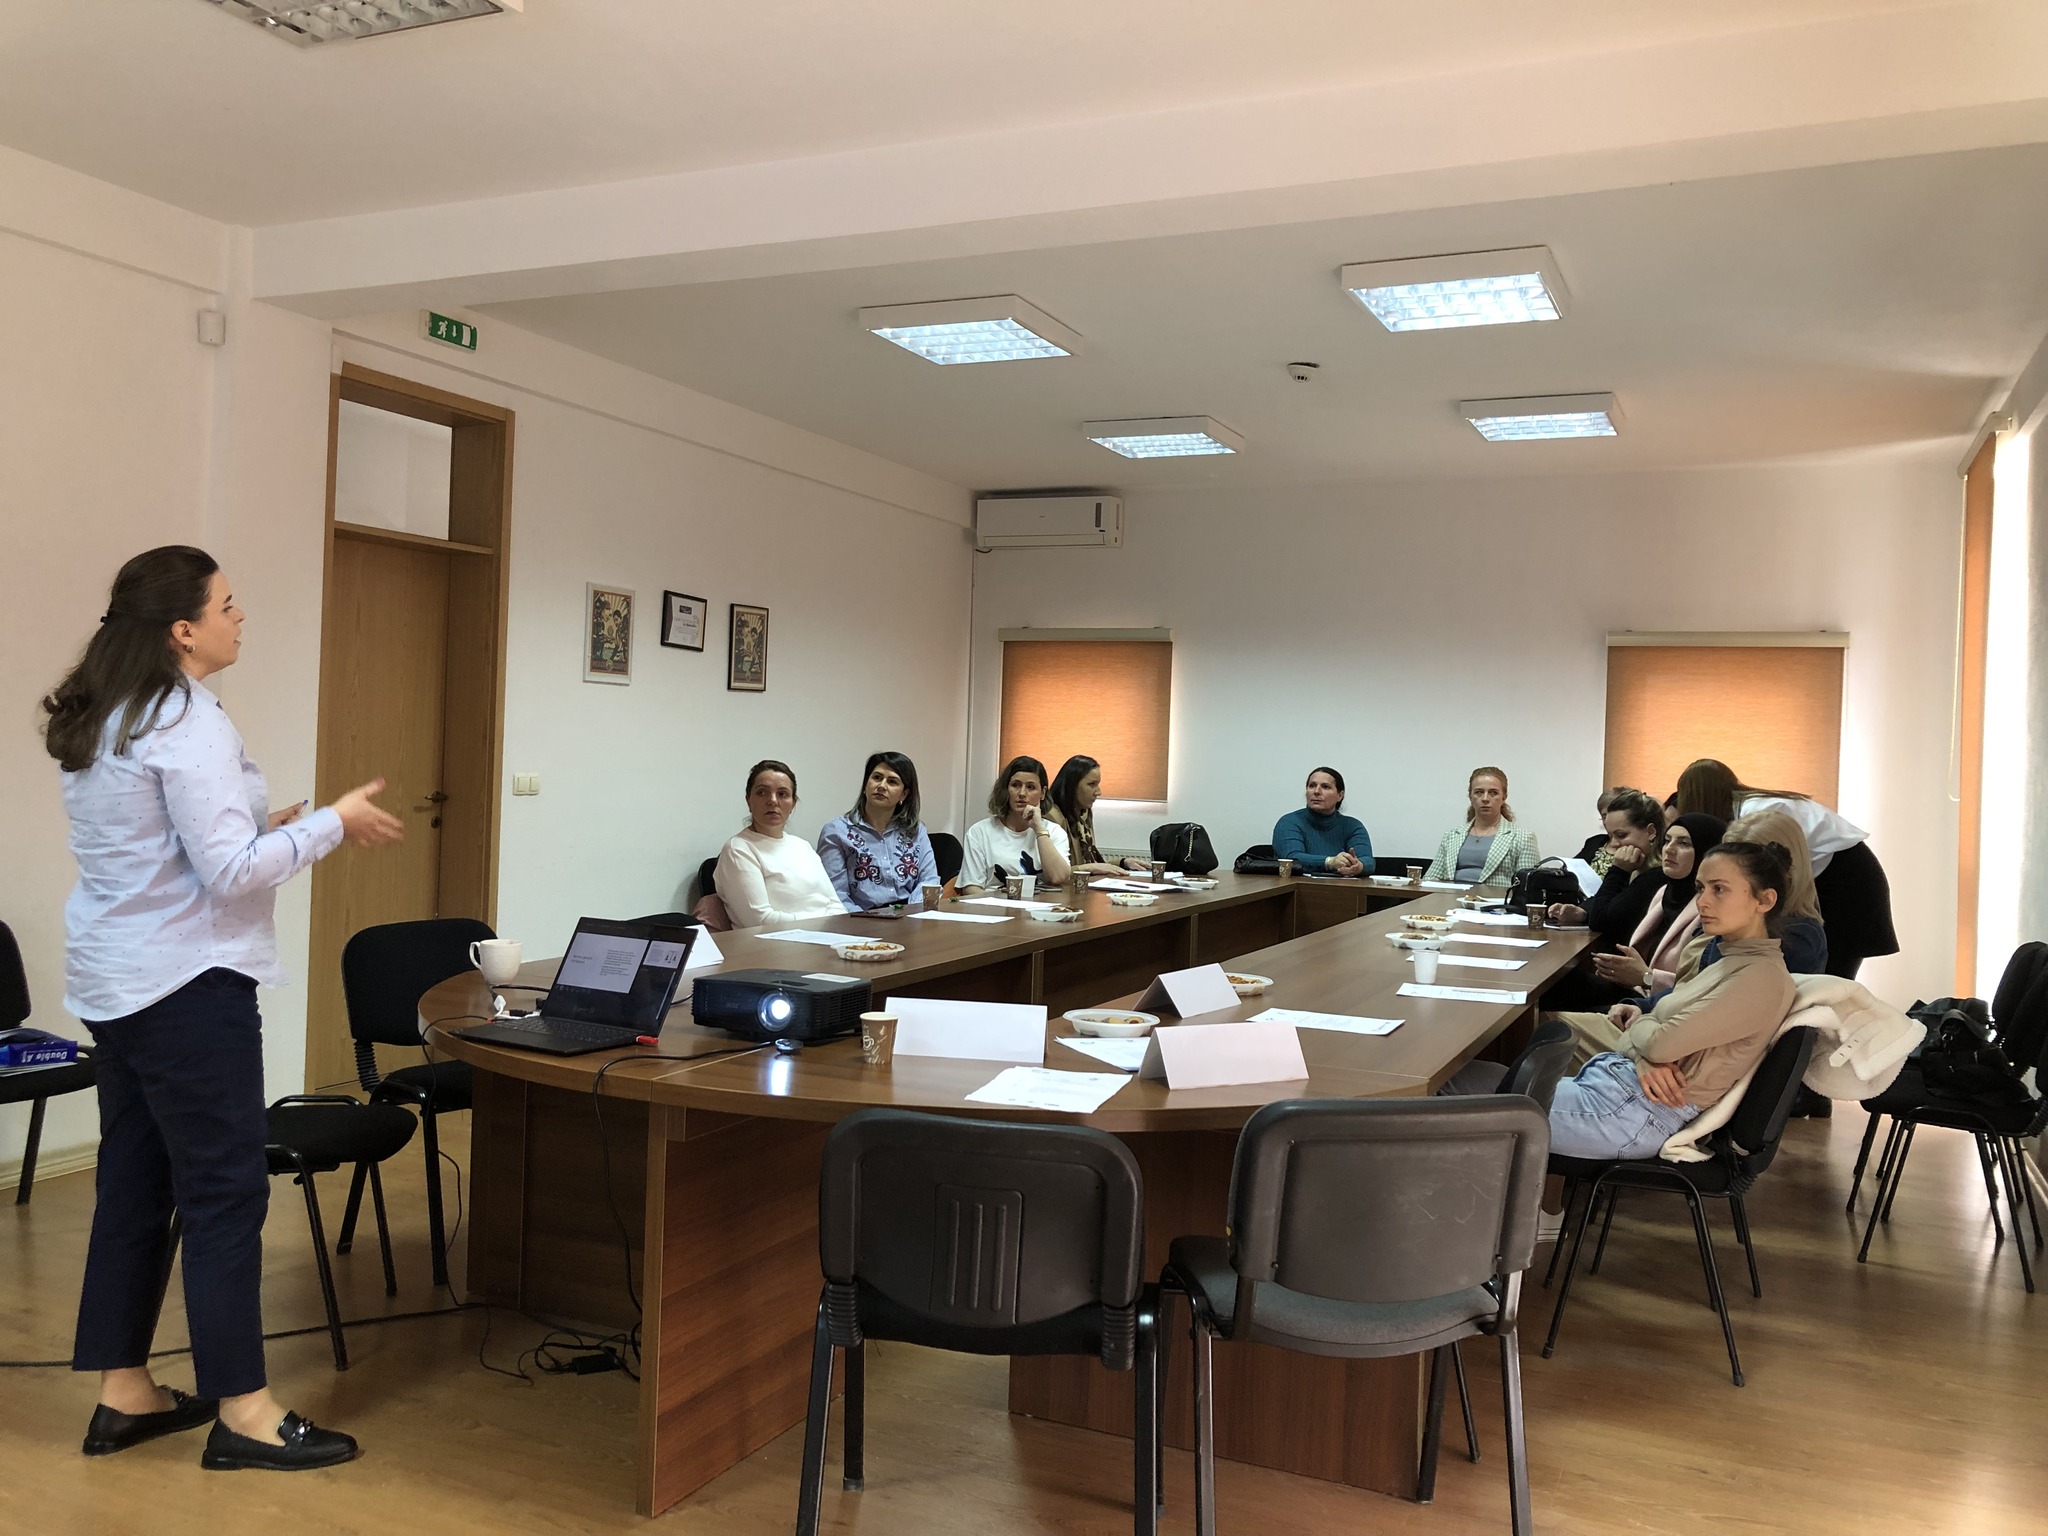 Në kuadër të projektit “IWKA – Përfshirja e grave në agrobiznesin e Kosovës”, perfunduan seminaret 8 ditore në Komunat e Prishtinës, Graçanicës, Ferizajit dhe Junikut